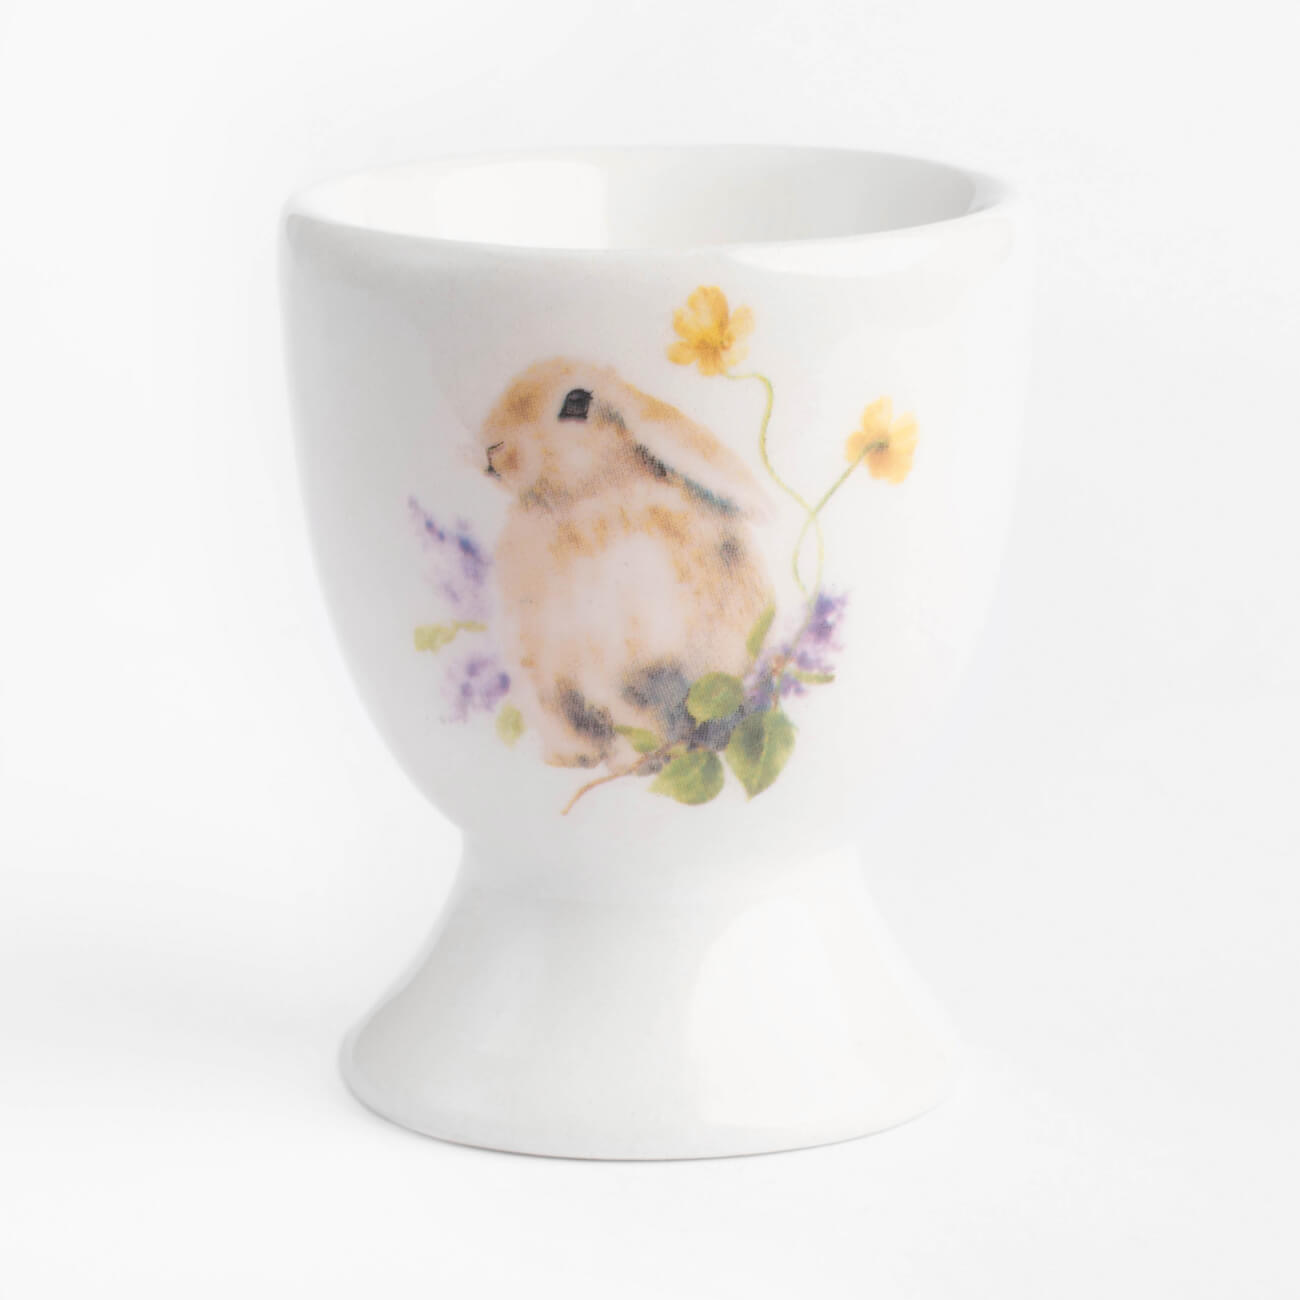 Подставка для яйца, 6 см, керамика, белая, Кролик в цветах, Easter изображение № 1